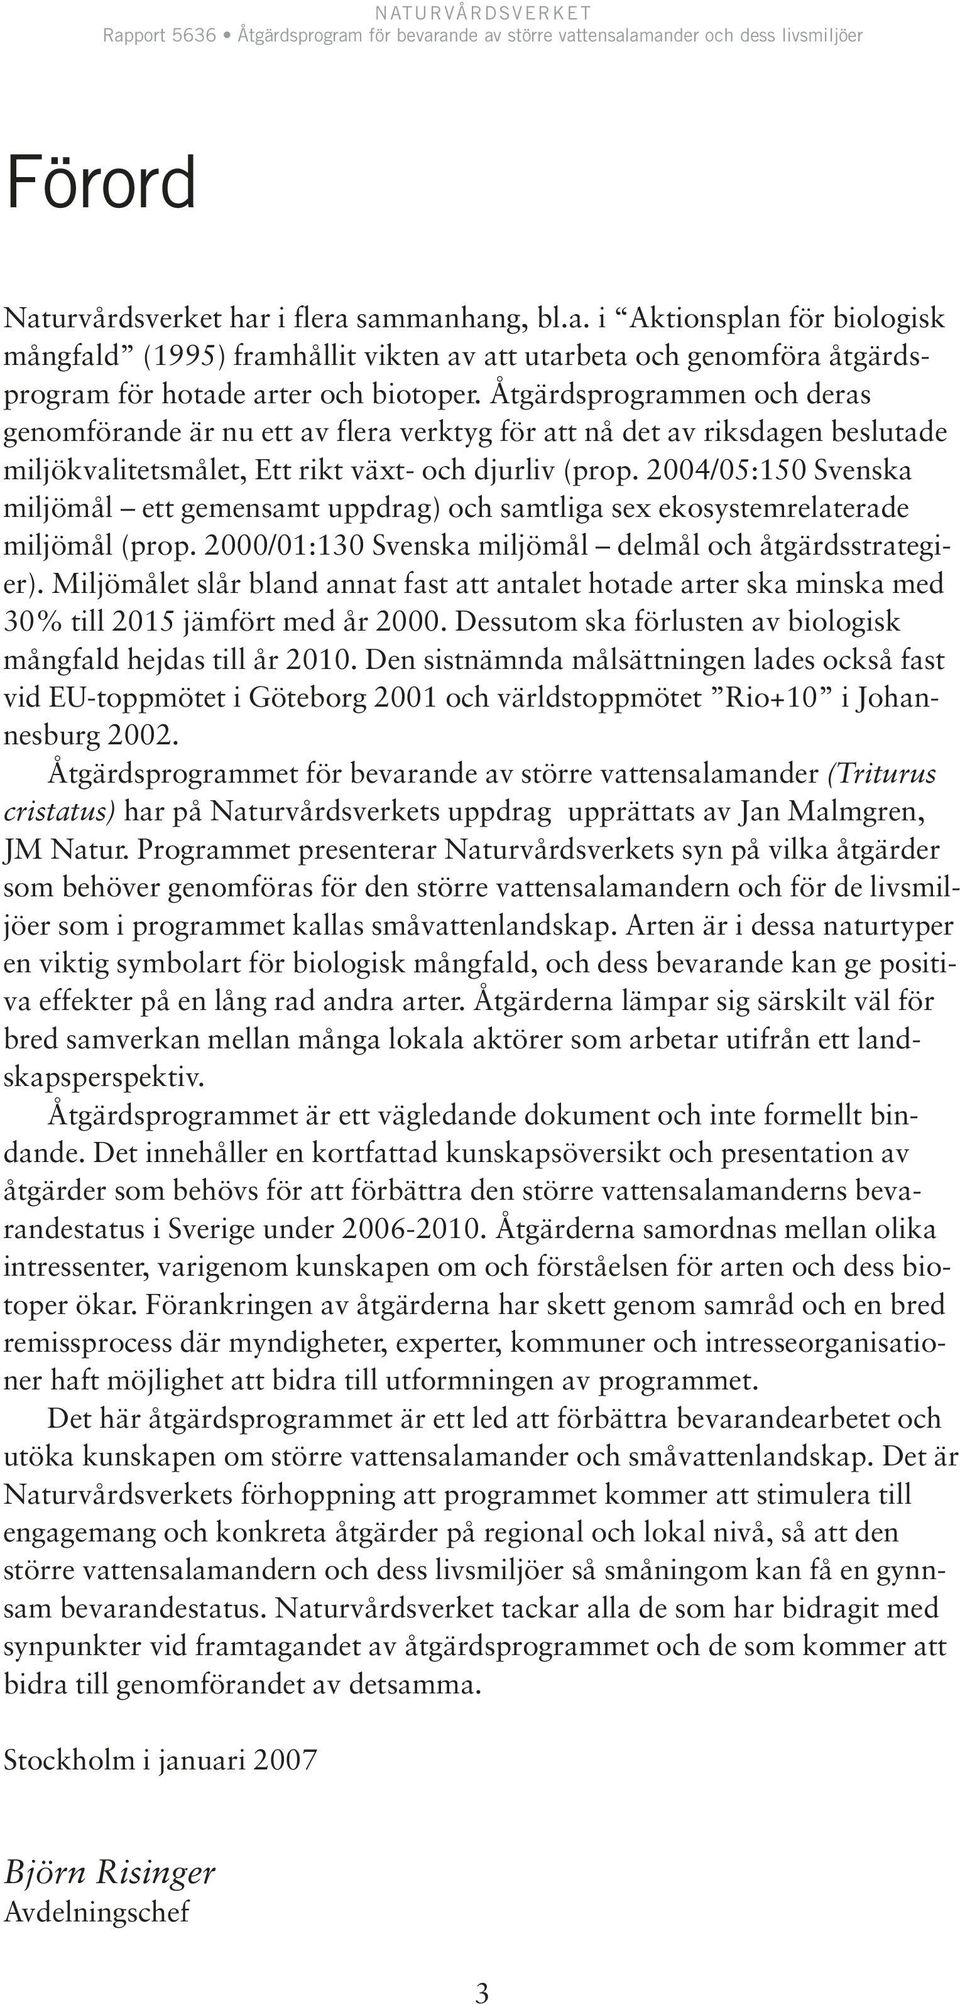 2004/05:150 Svenska miljömål ett gemensamt uppdrag) och samtliga sex ekosystemrelaterade miljömål (prop. 2000/01:130 Svenska miljömål delmål och åtgärdsstrategier).